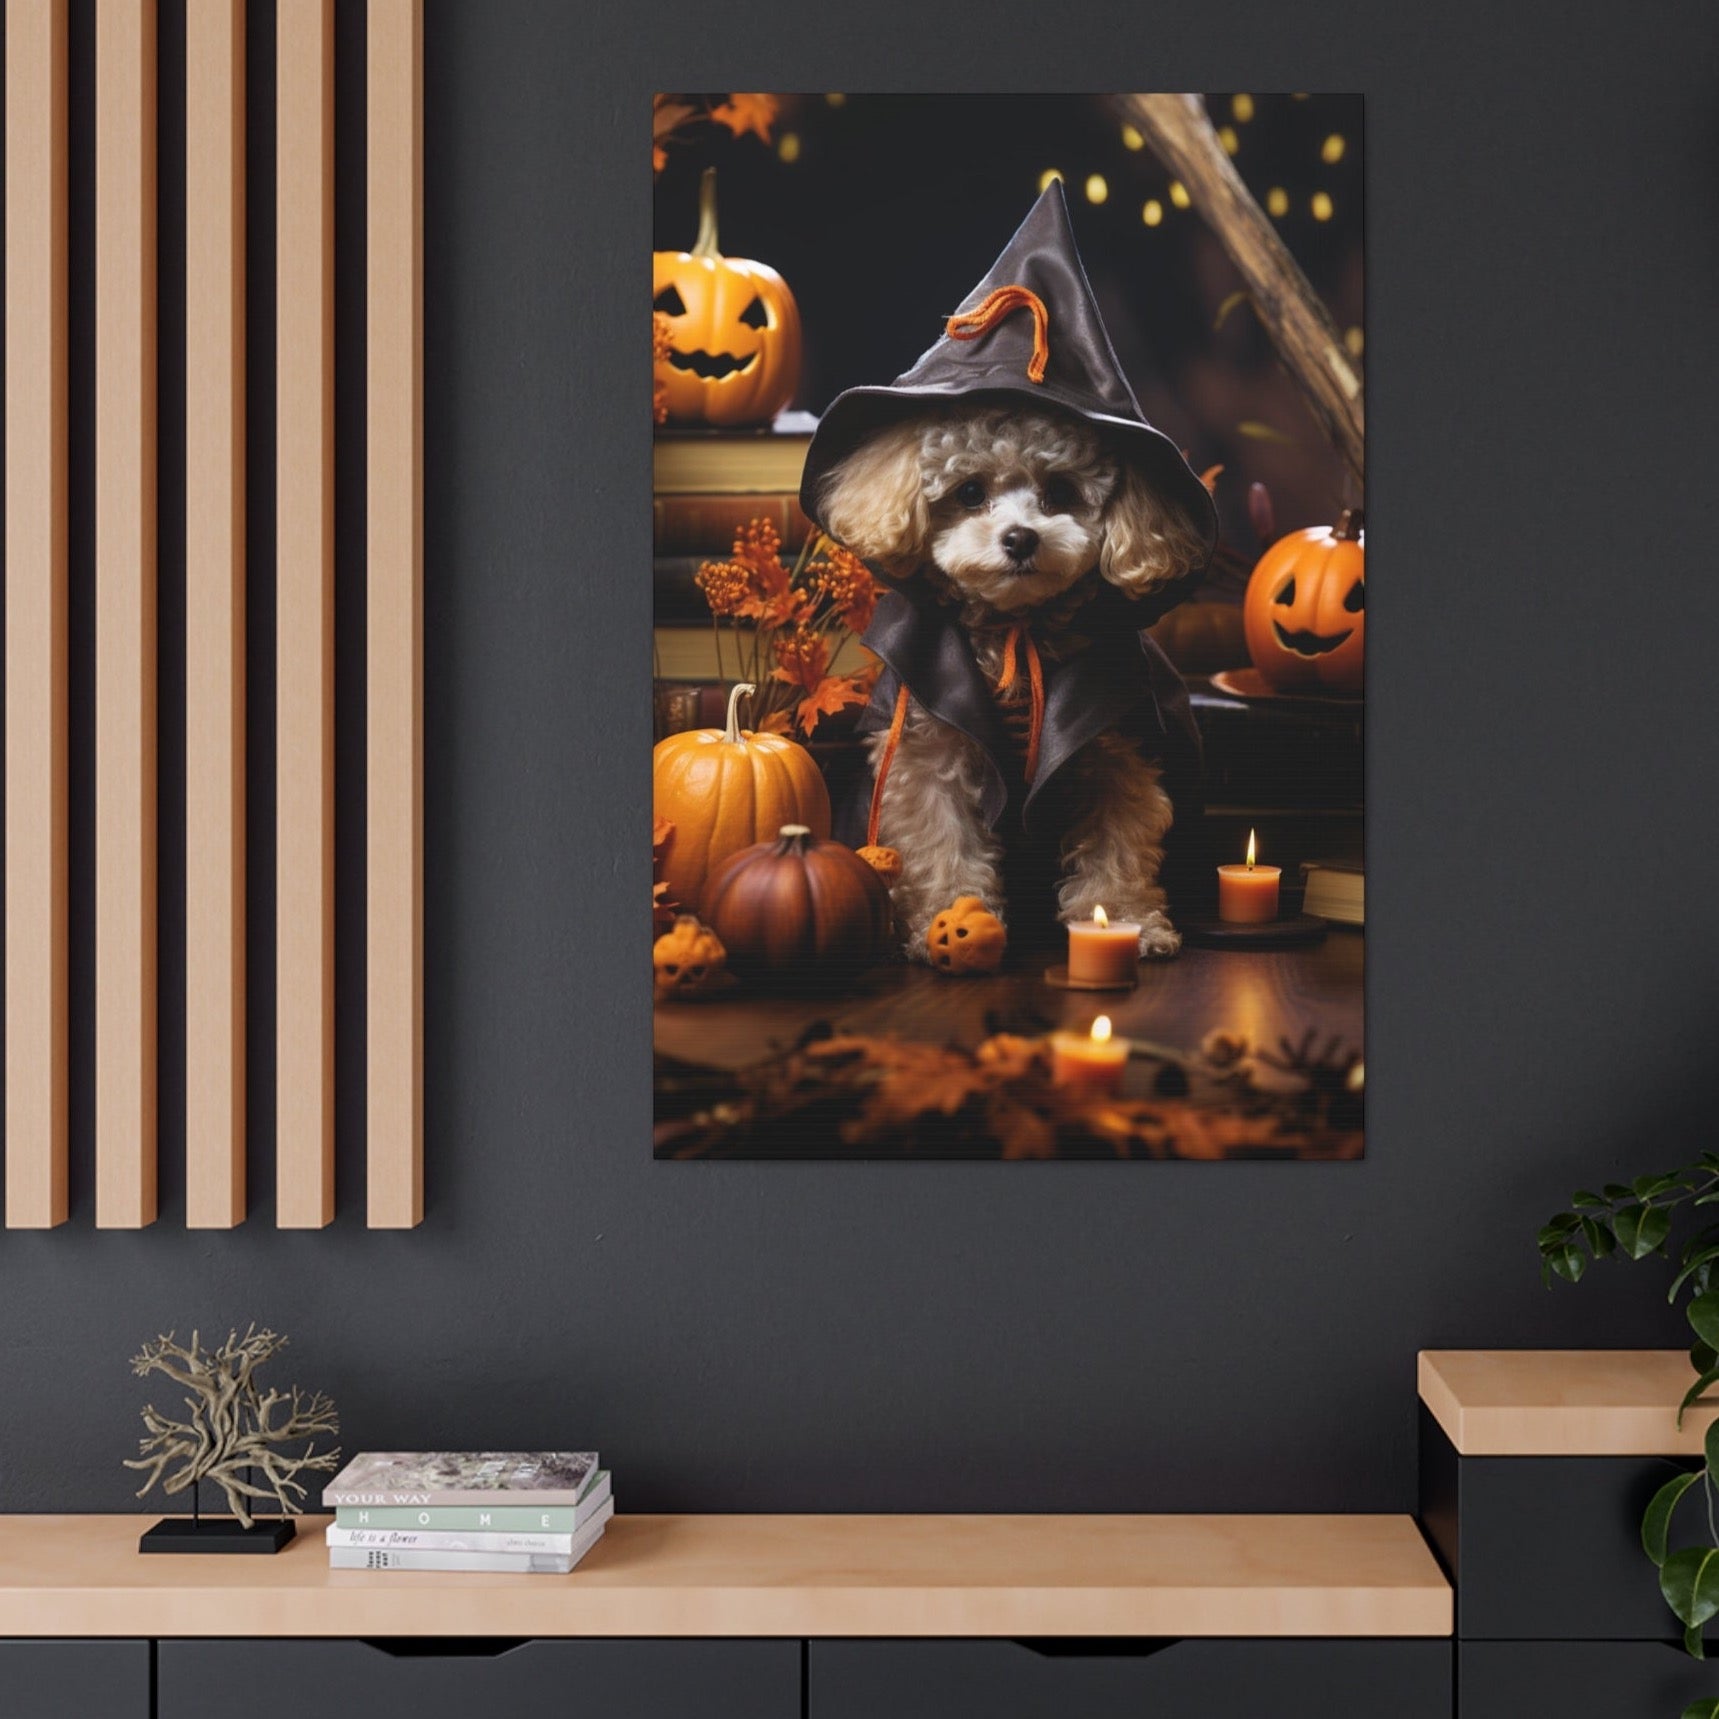 Poodle halloween scene wall art